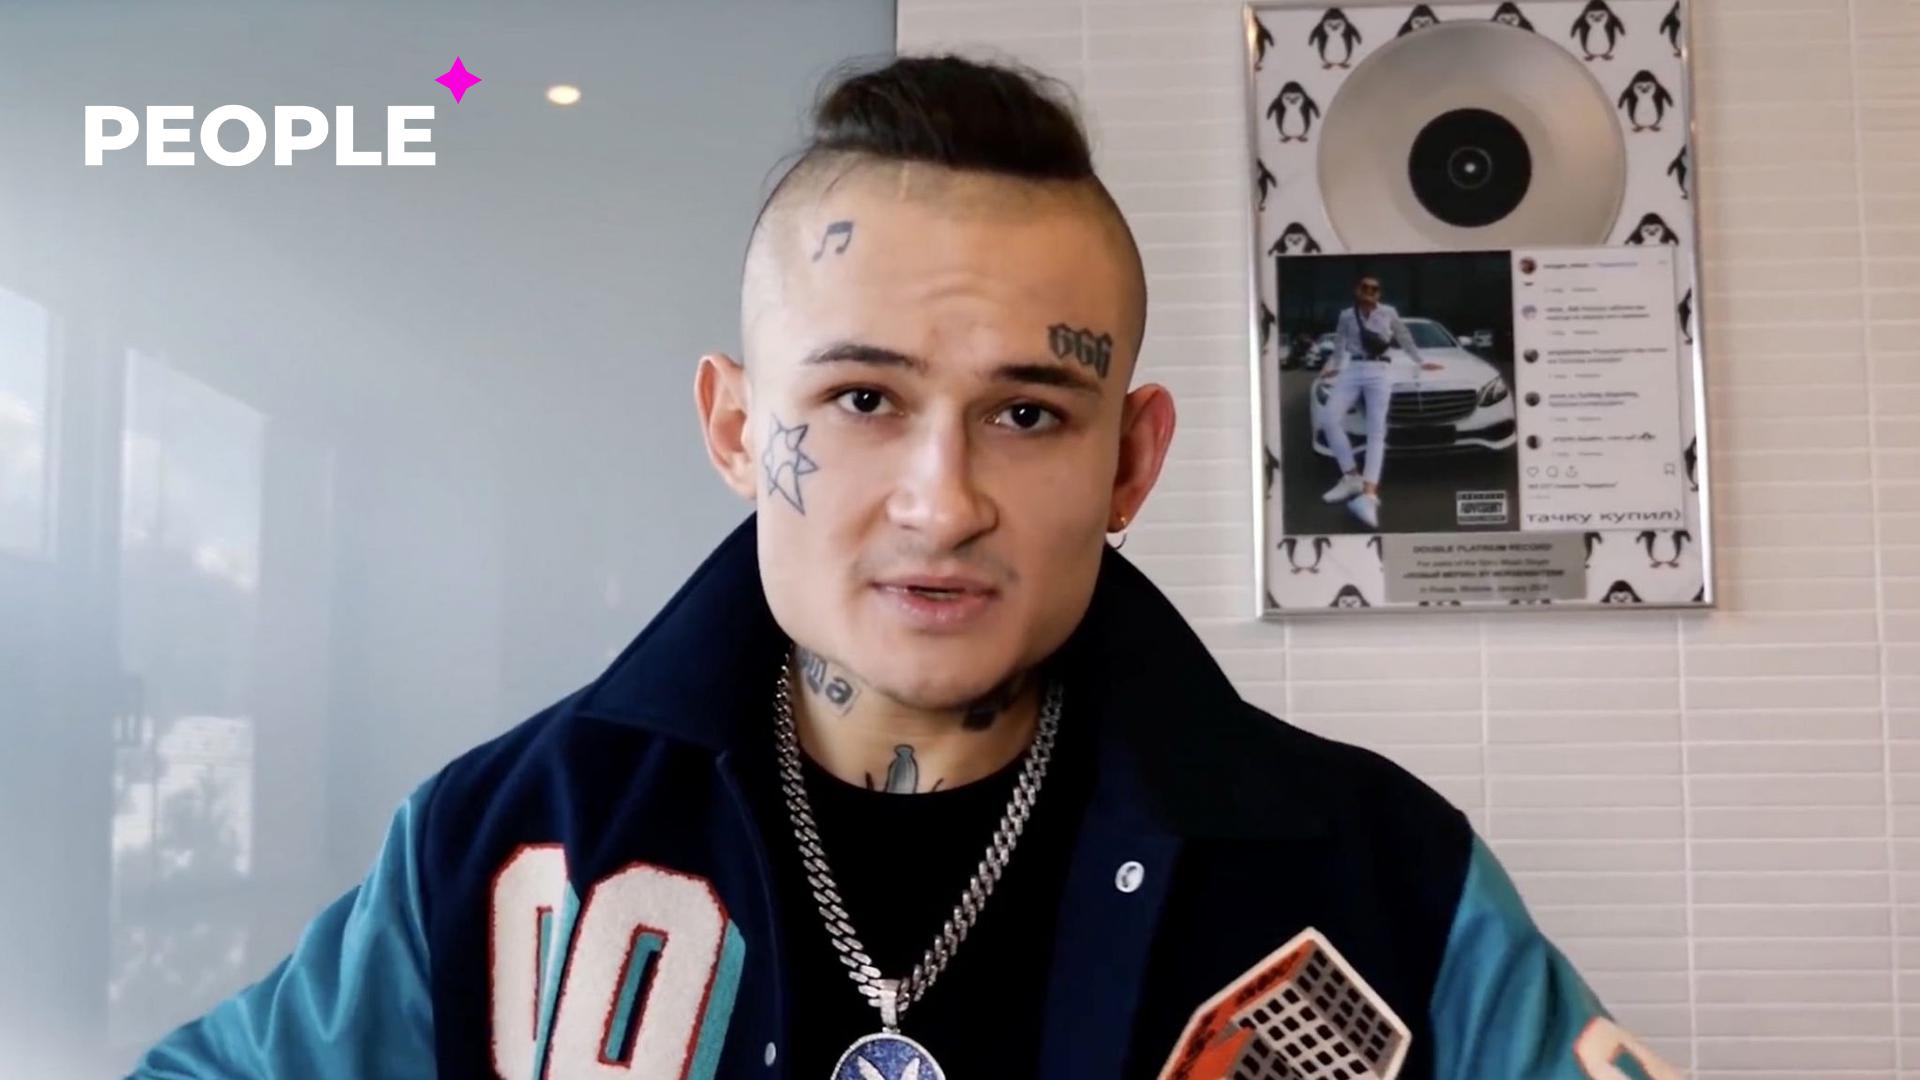 Моргенштерн напугал фанатов своей новой татуировкой на голове — фото